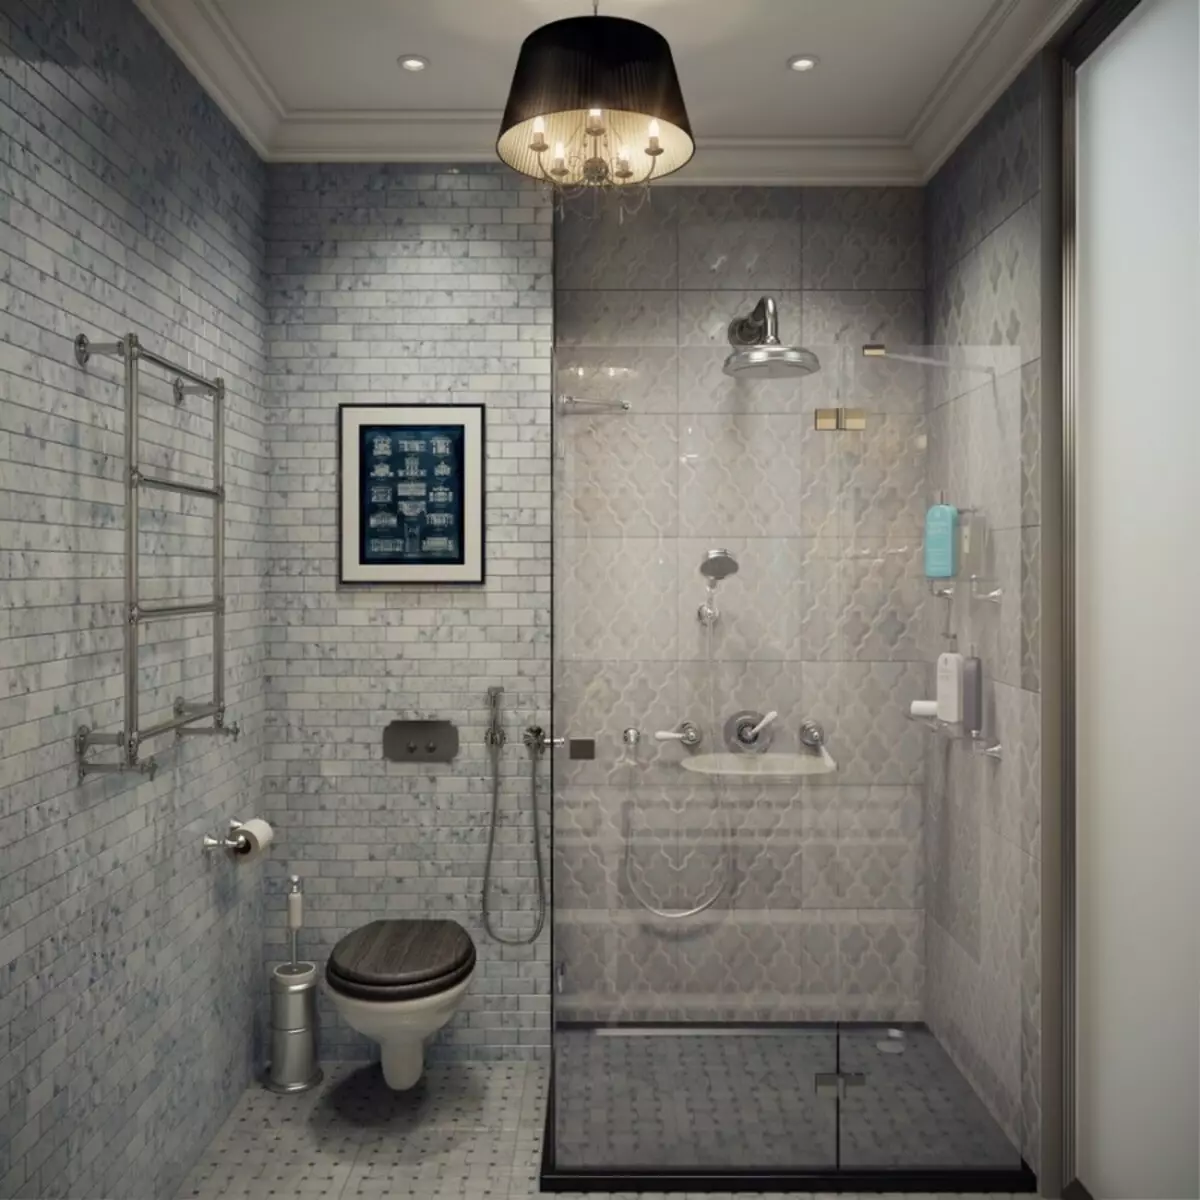 Desain kamar mandi dengan mesin cuci dengan luas 4 km. M (46 foto): Proyek kamar mandi dengan toilet dan mesin cuci, perencanaan yang sukses 10199_34